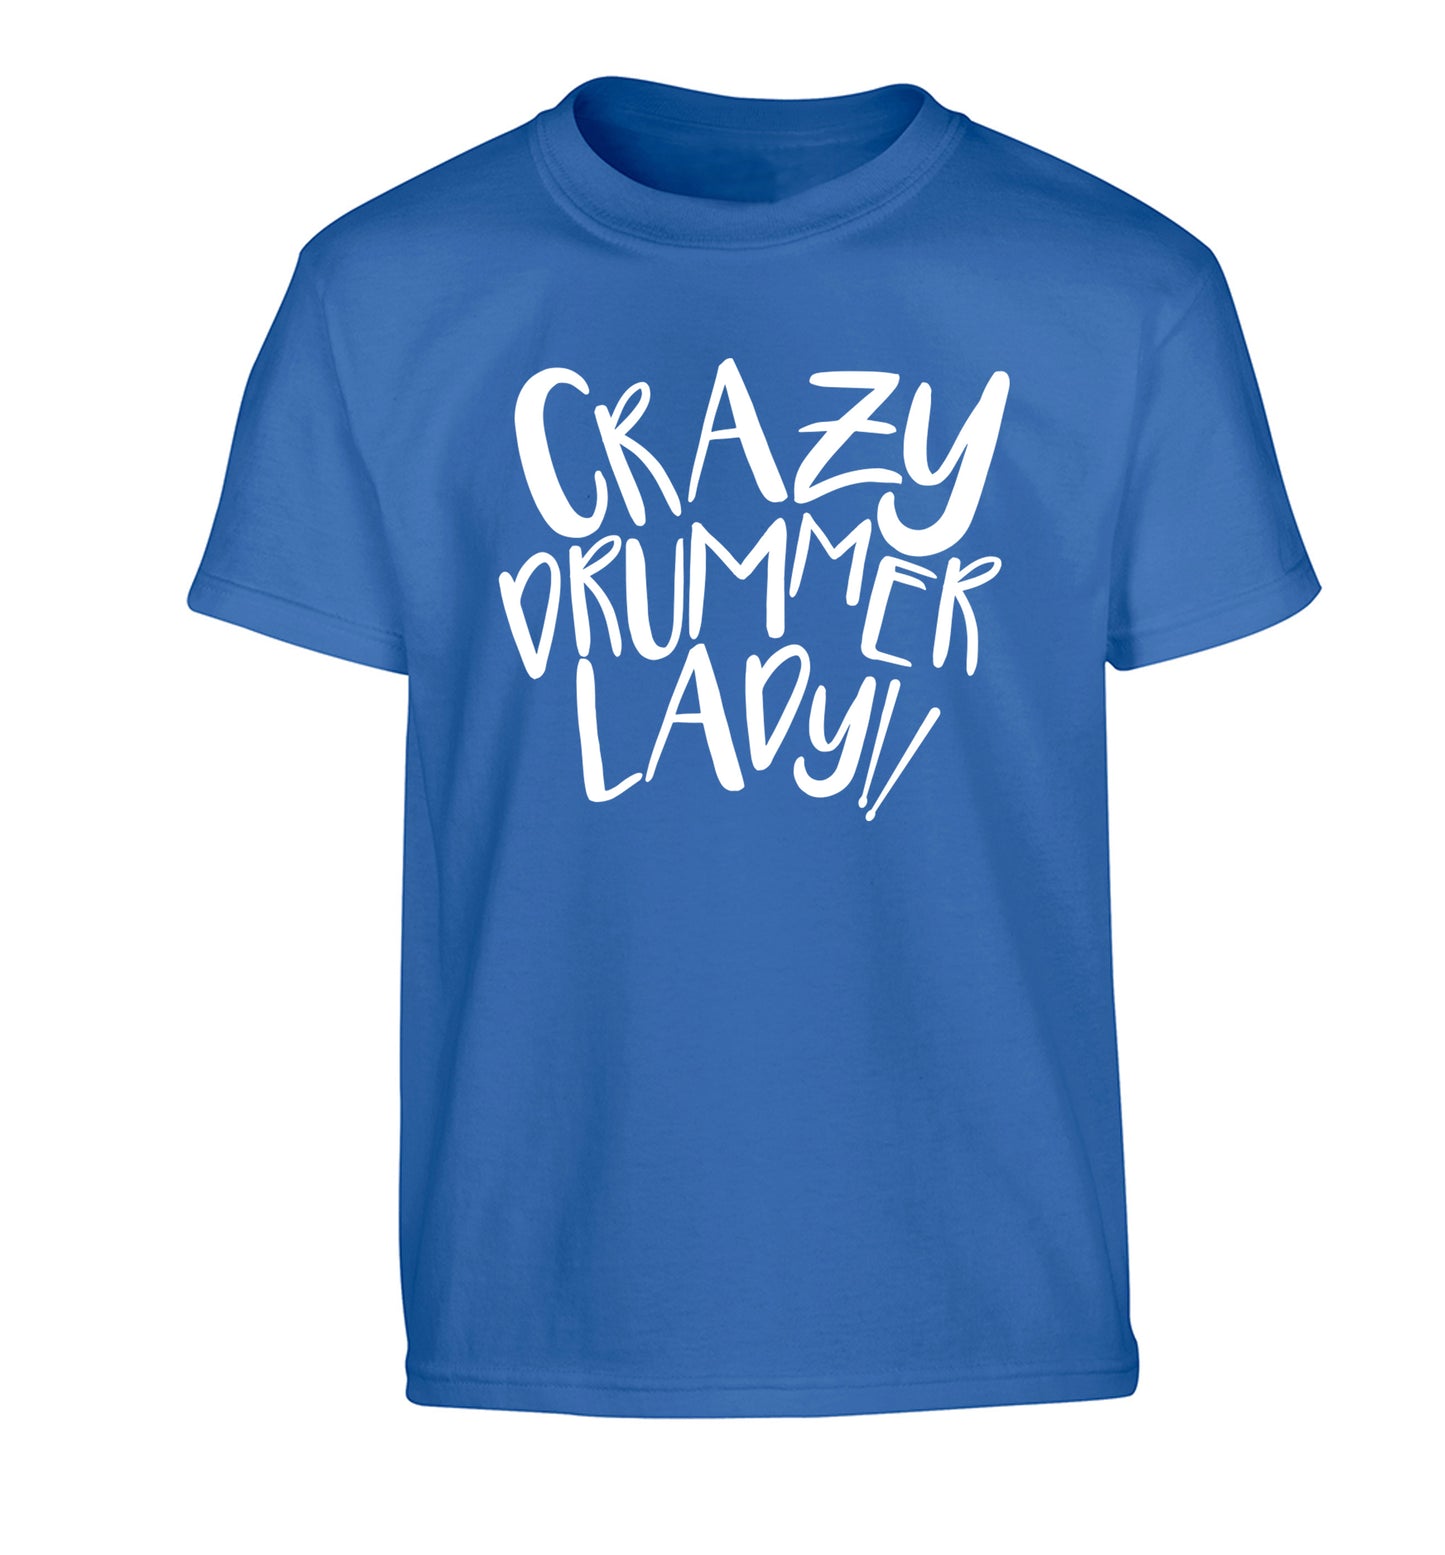 Crazy drummer lady Children's blue Tshirt 12-14 Years